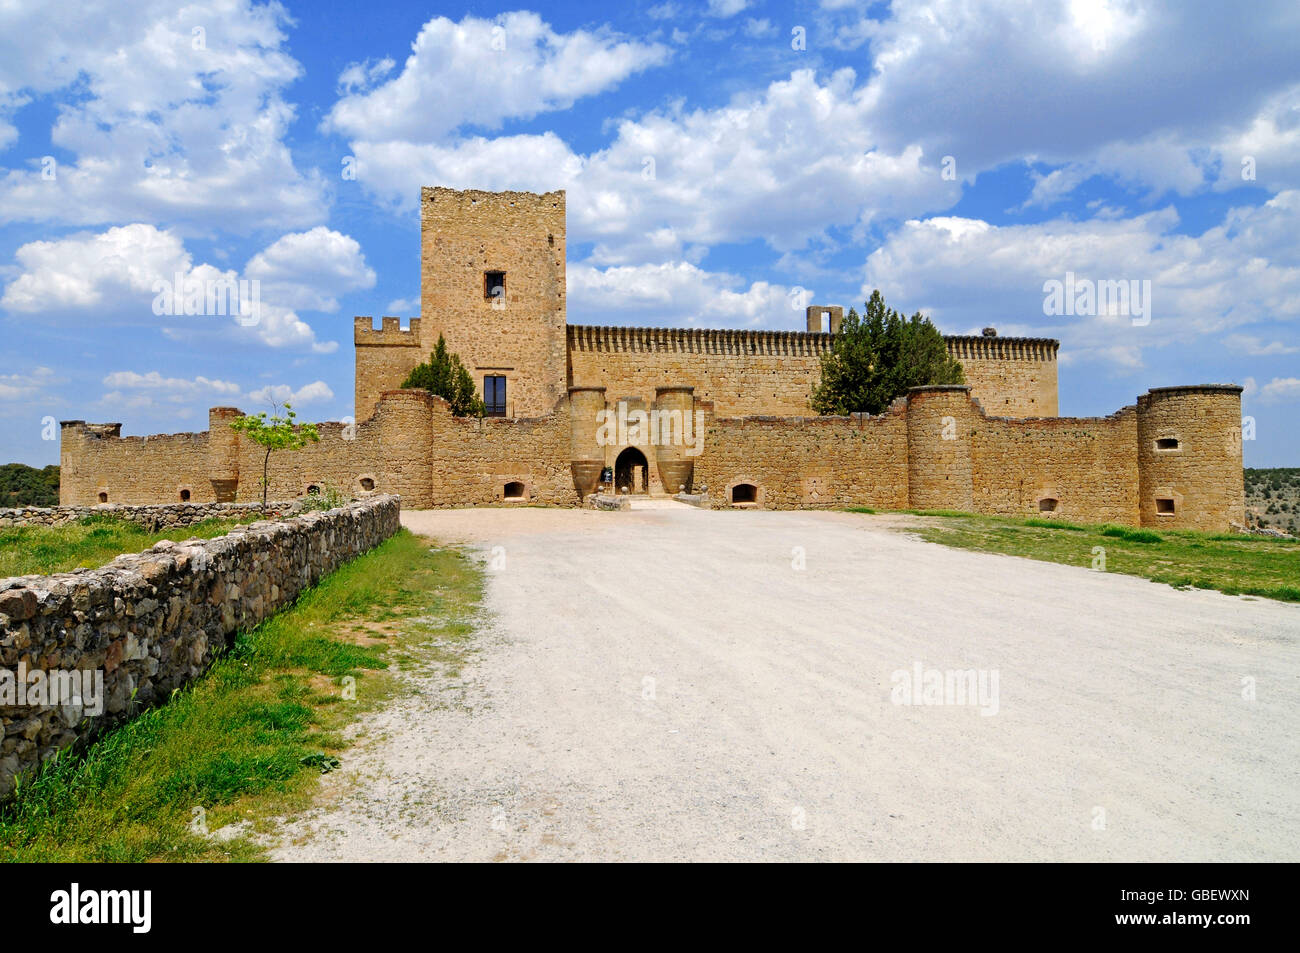 Castillo, Ignacio Zuloaga Museum, Pedraza de la Sierra, province Segovia, Castile and Leon, Spain / Museo Ignacio Zuloaga, Castilla y Leon Stock Photo